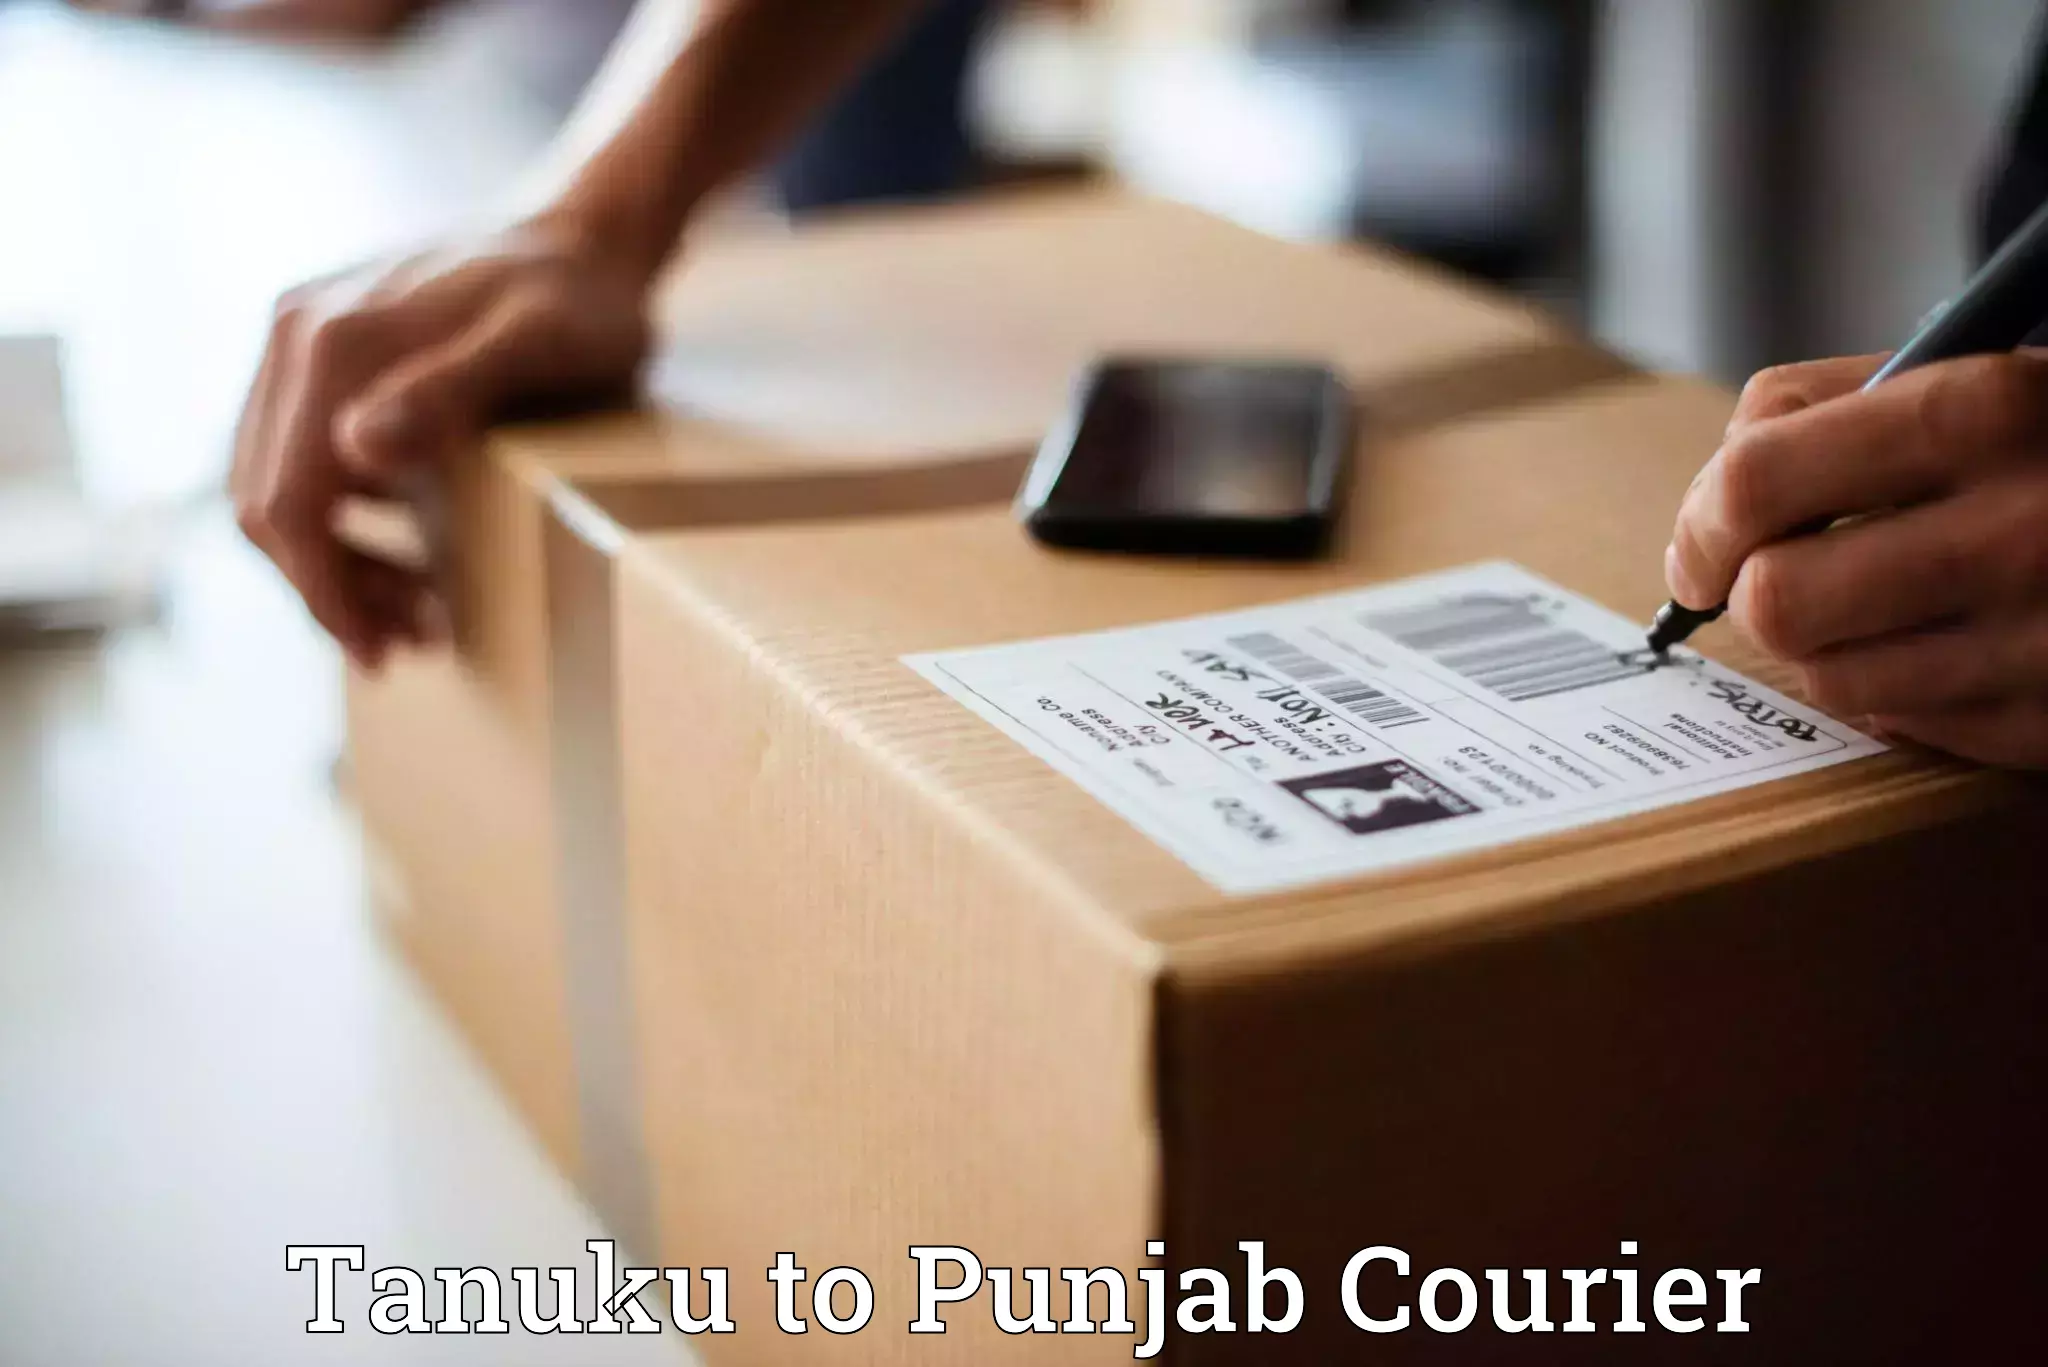 Courier service booking Tanuku to Punjab